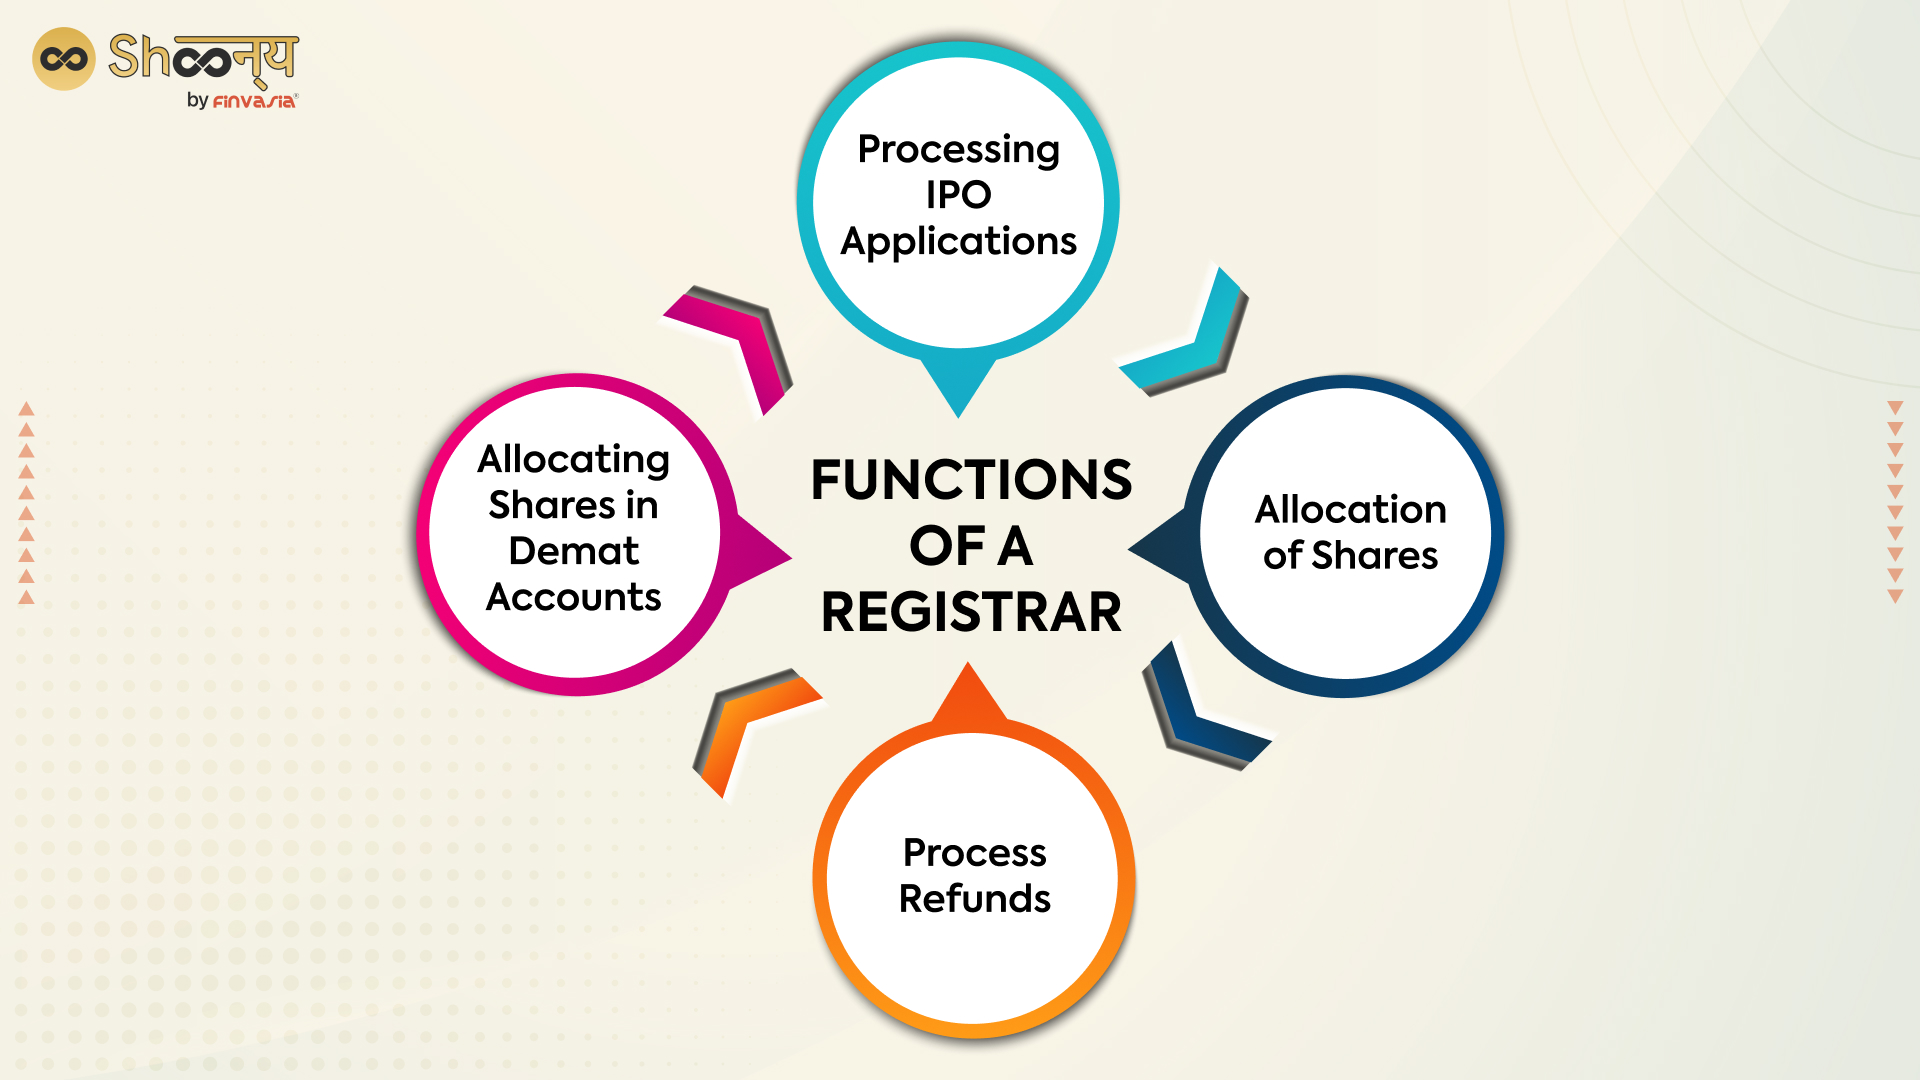 Functions of a registrar